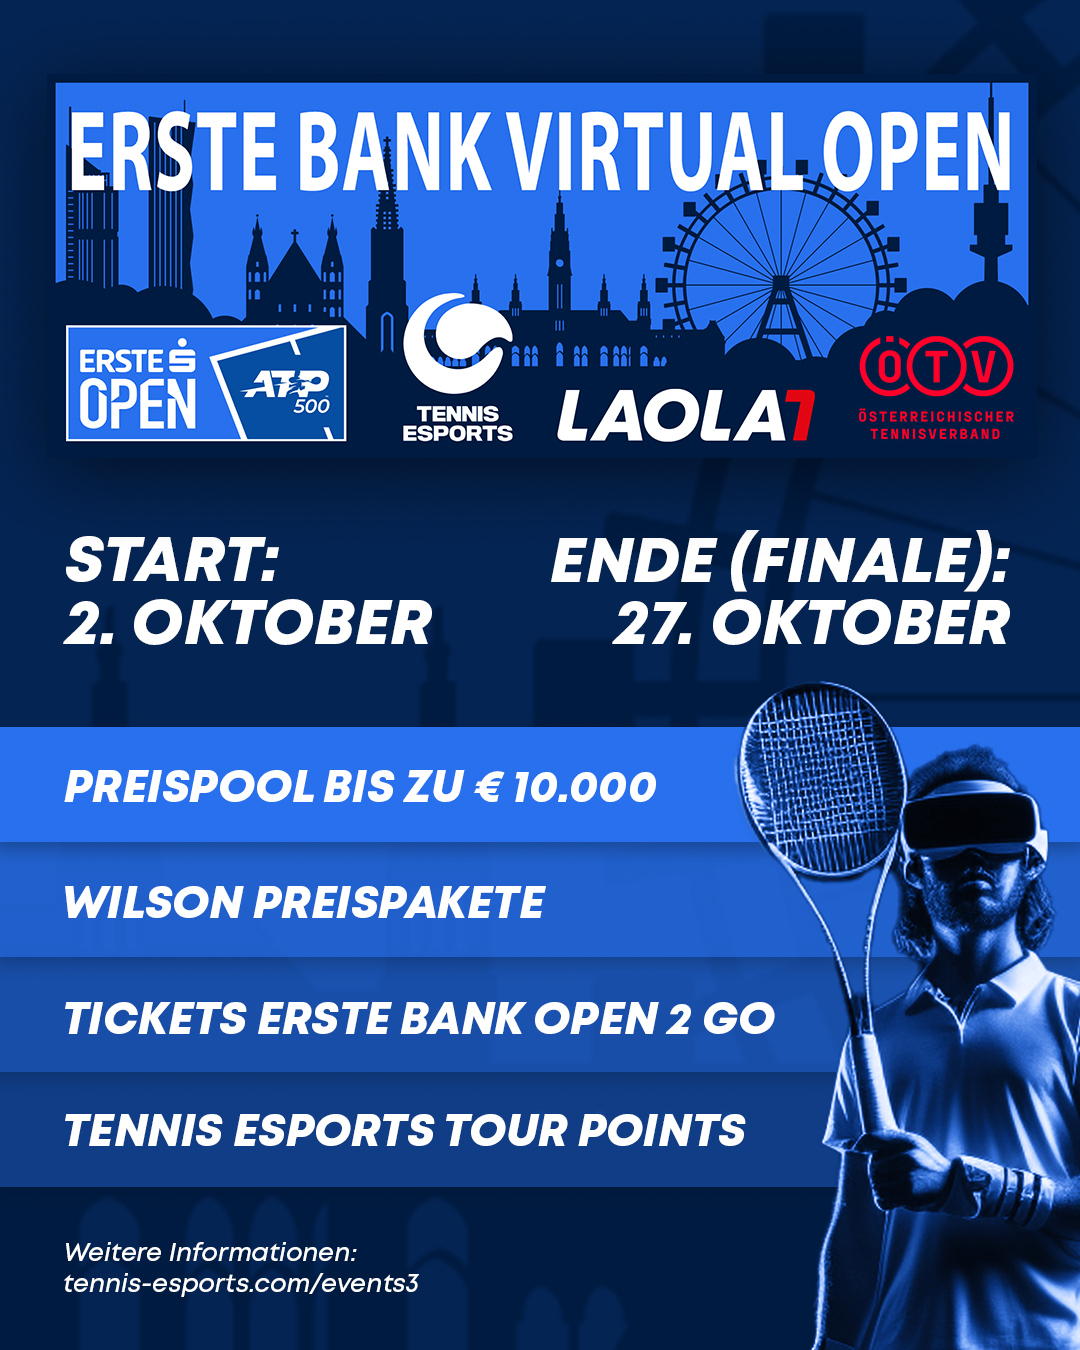 LAOLA1 präsentiert mit emotion, Tennis Esports und dem ÖTV erstes VR-Tennisturnier in Europa Partner-News